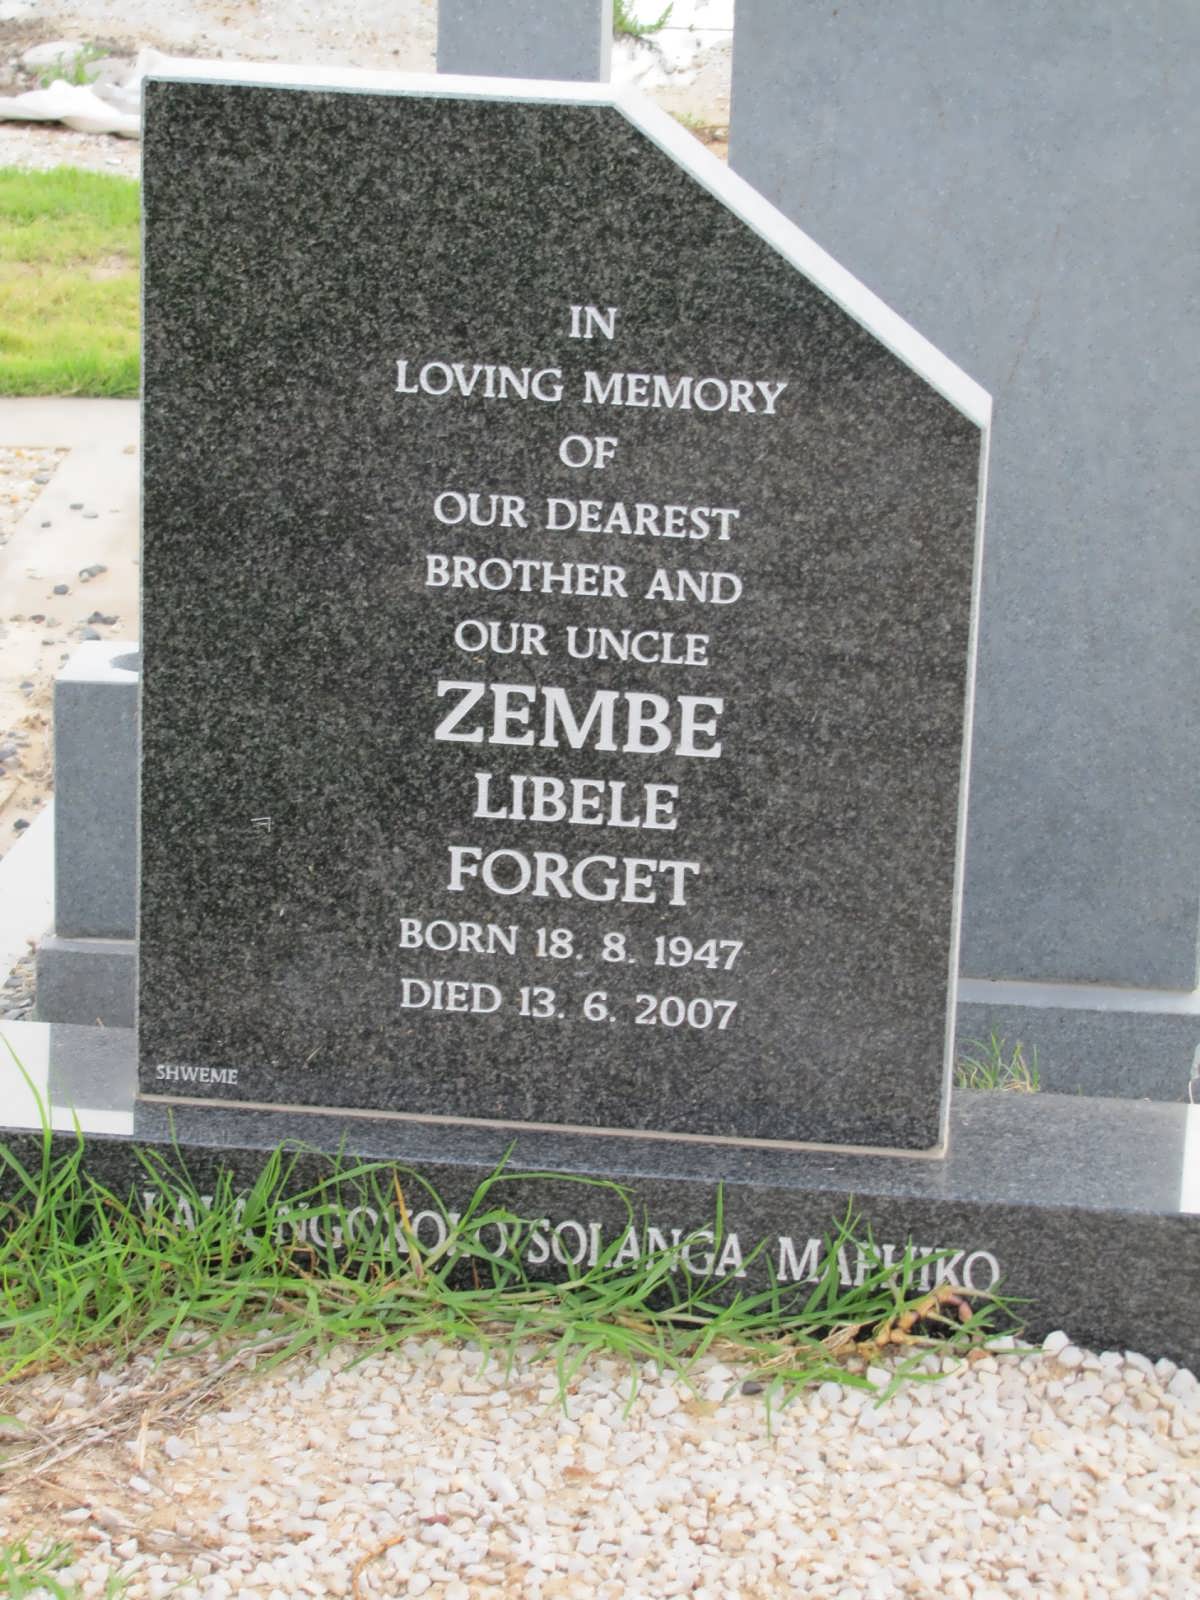 ZEMBE Libele Forget 1947-2007